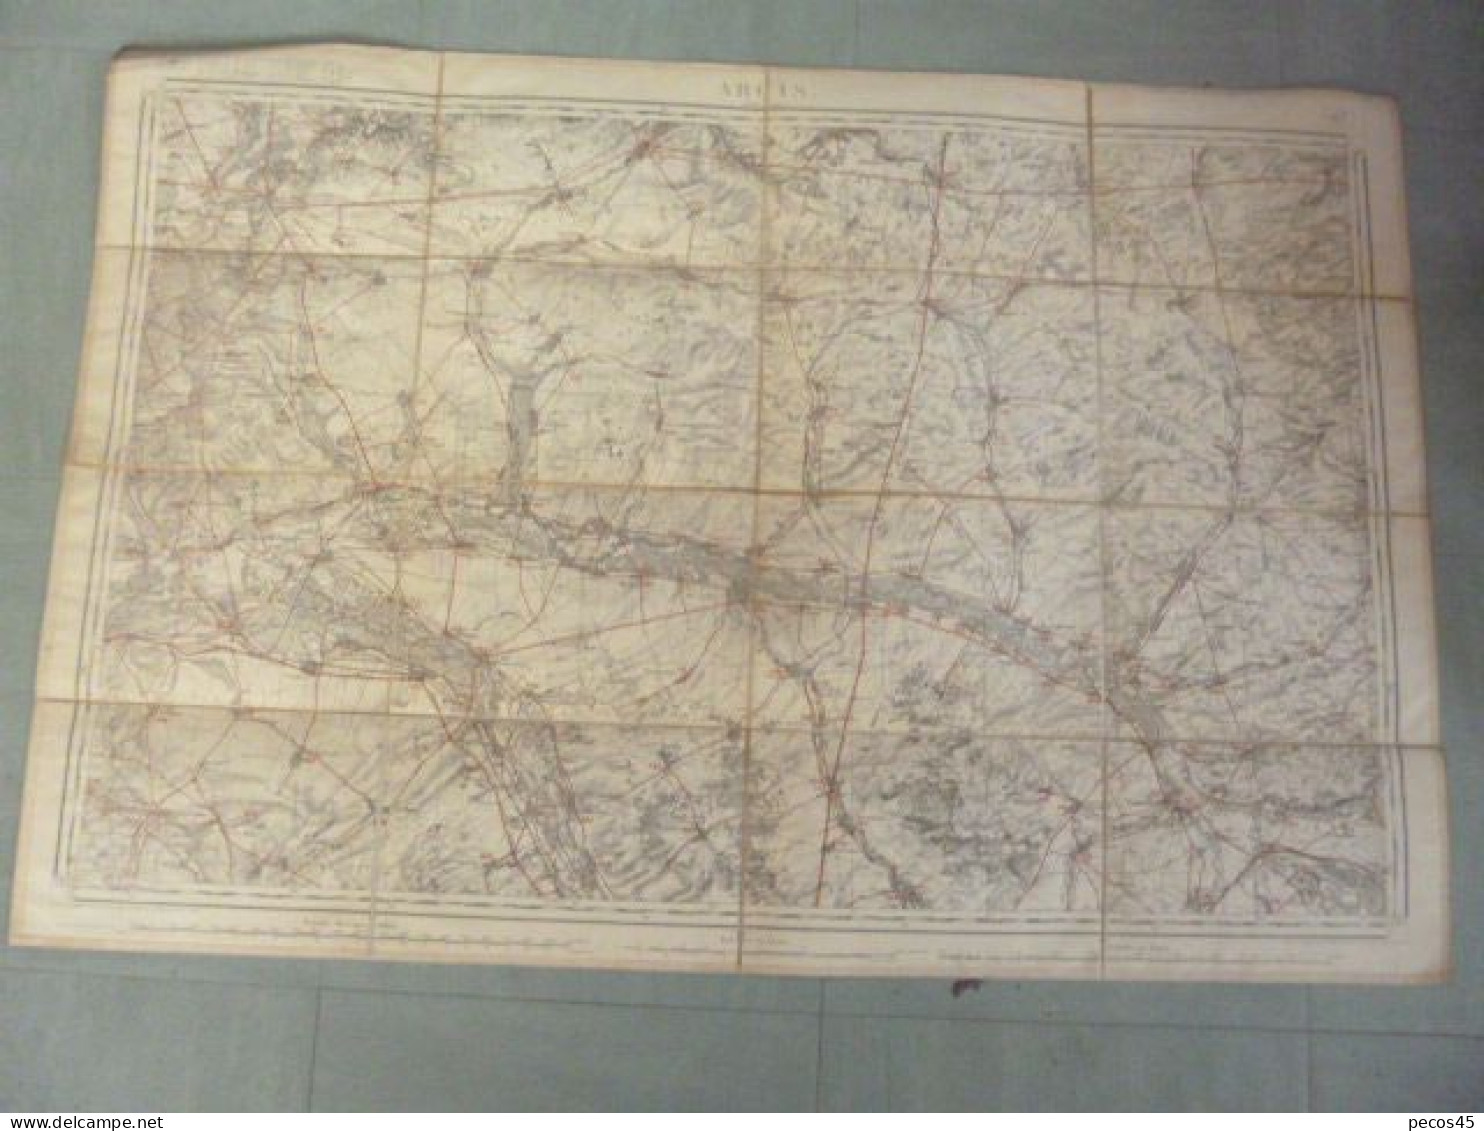 ARCIS S/Aube (10) - 1/80 000ème - 1835. - Topographische Karten